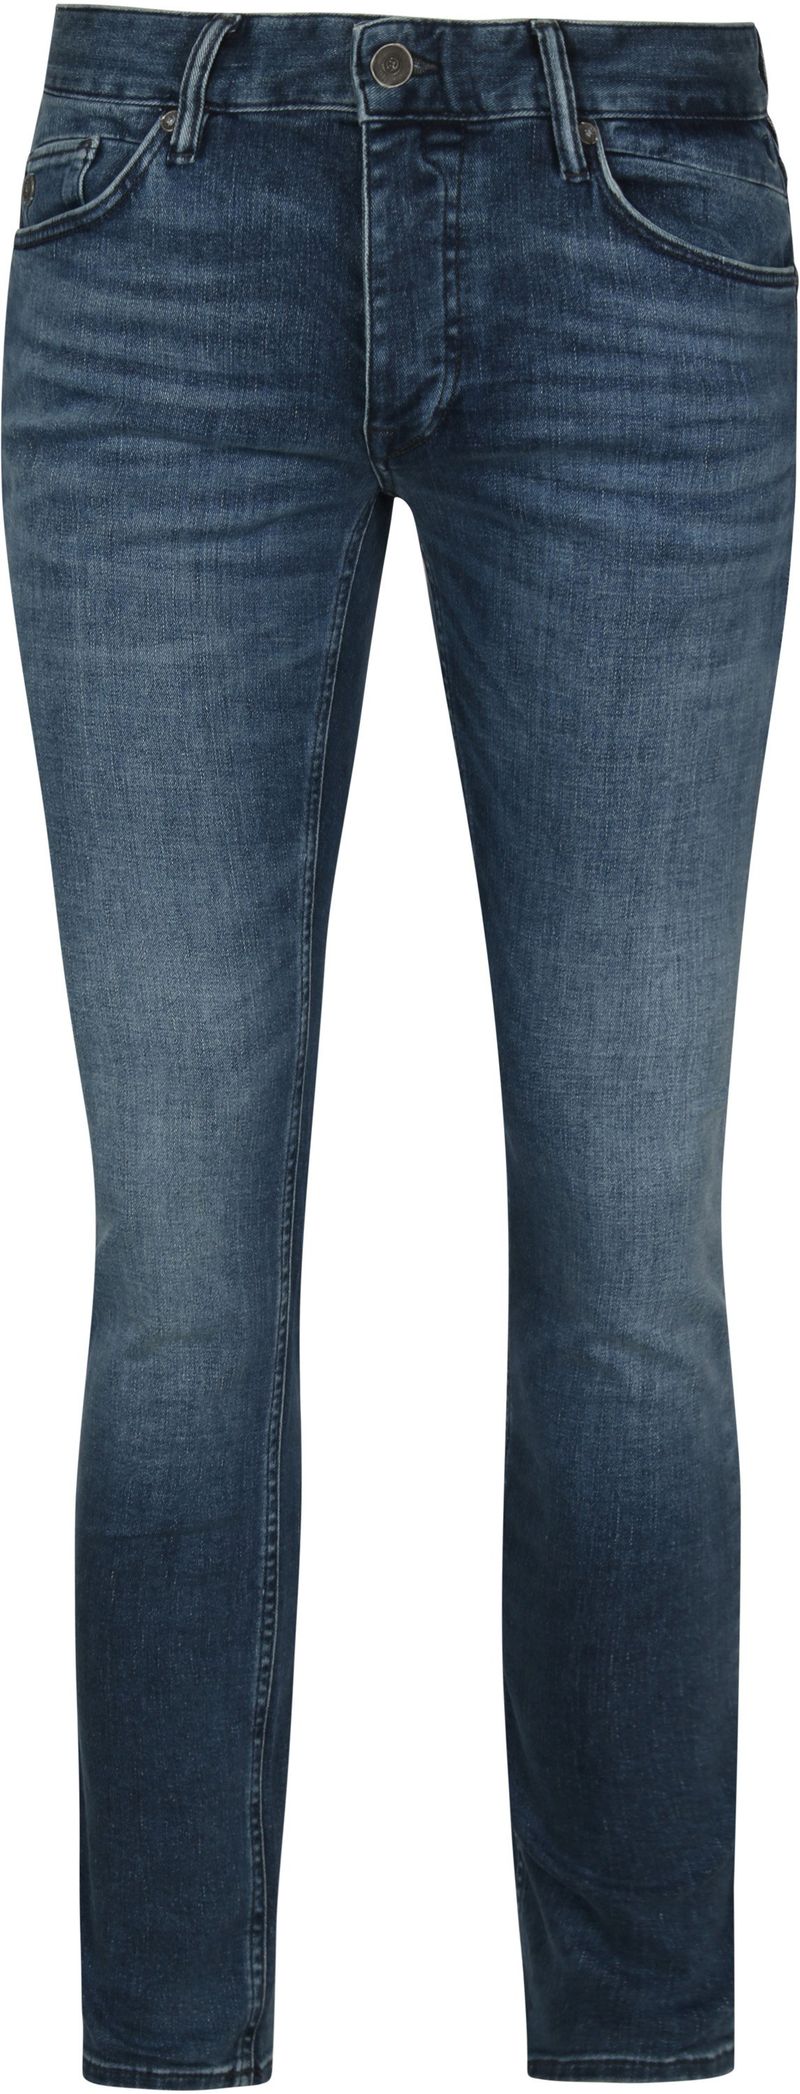 Cast Iron Riser Jeans ATB Blau - Größe W 30 - L 32 von Cast Iron